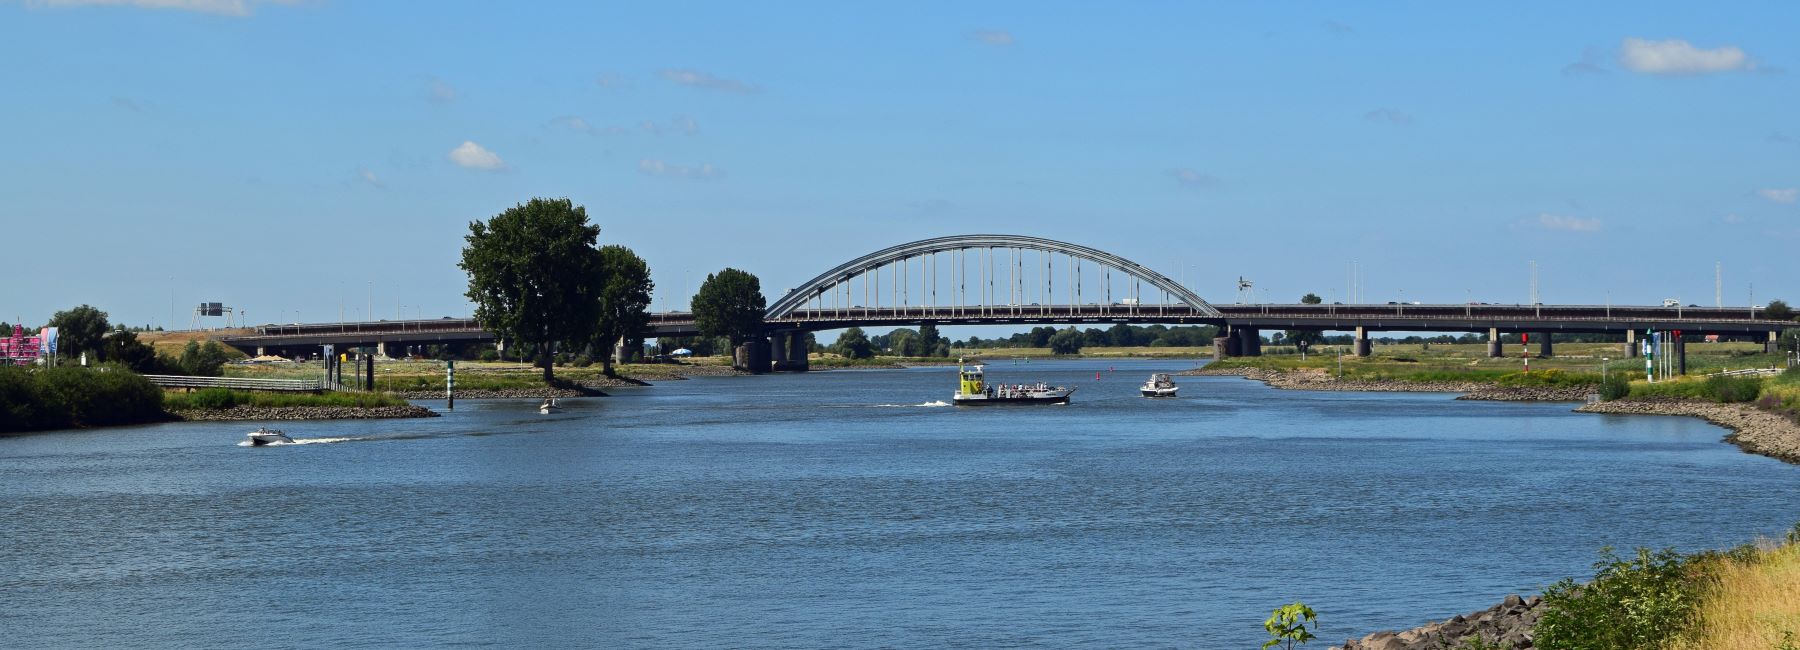 Snelwegbrug vanuit de rustige wijk met de rivier "de Lek" op de voorgrond waarop een boot en een veerboot varen.